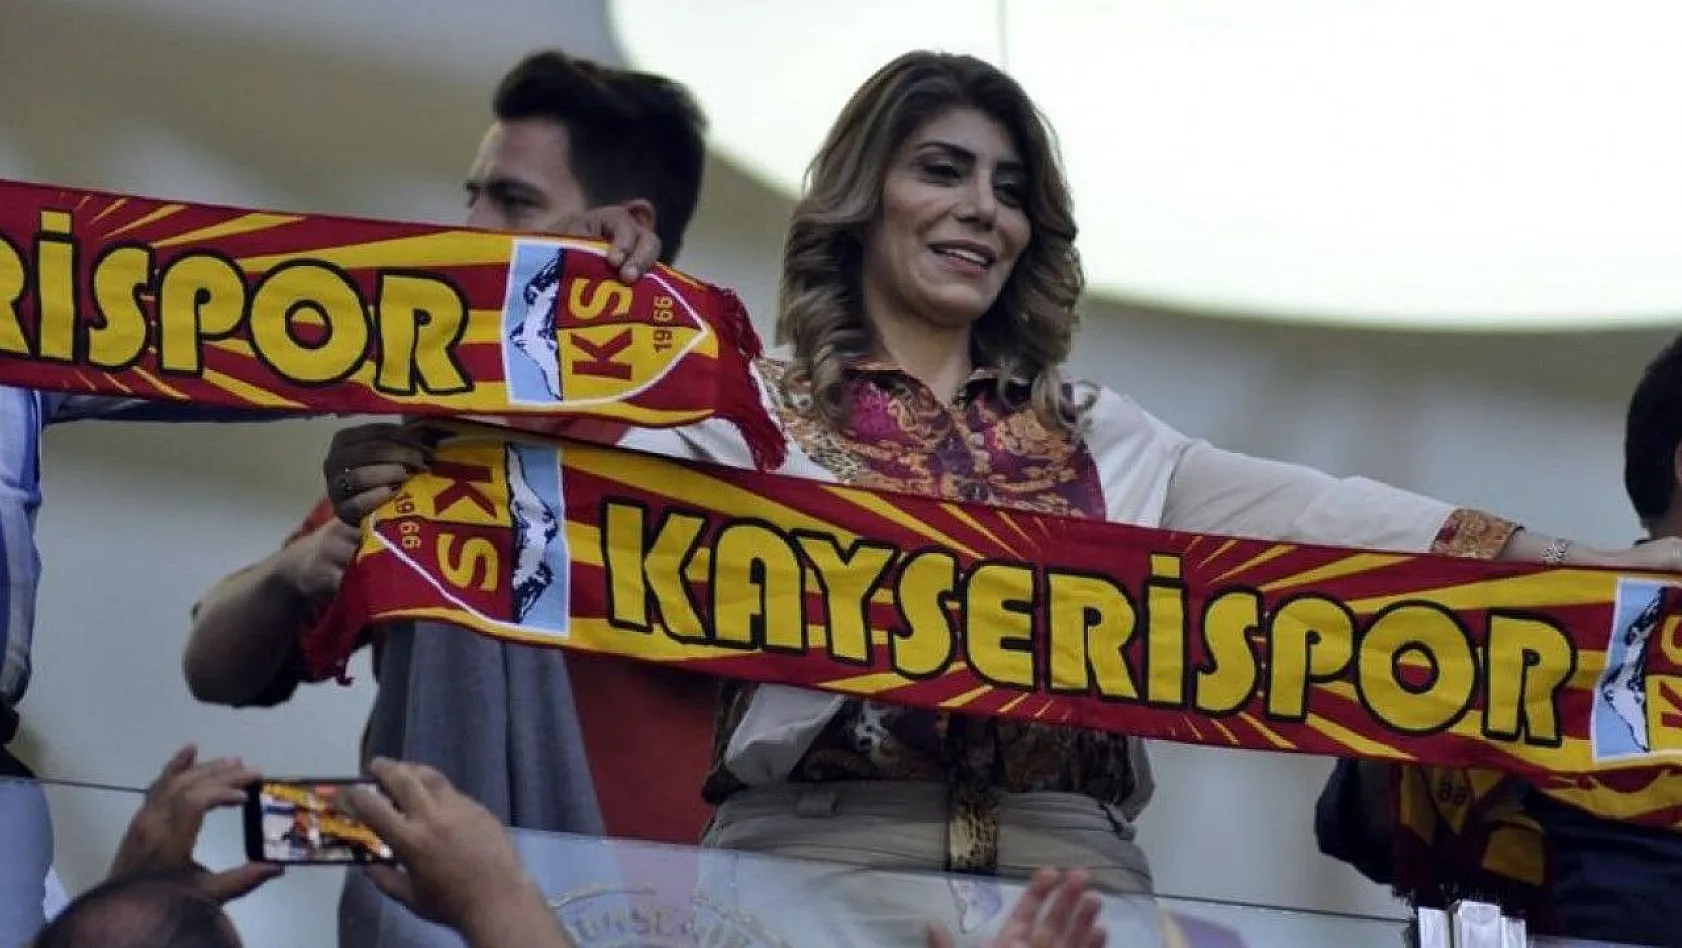 Süper Lig'in ilk kadın başkanından ayrılık sinyali